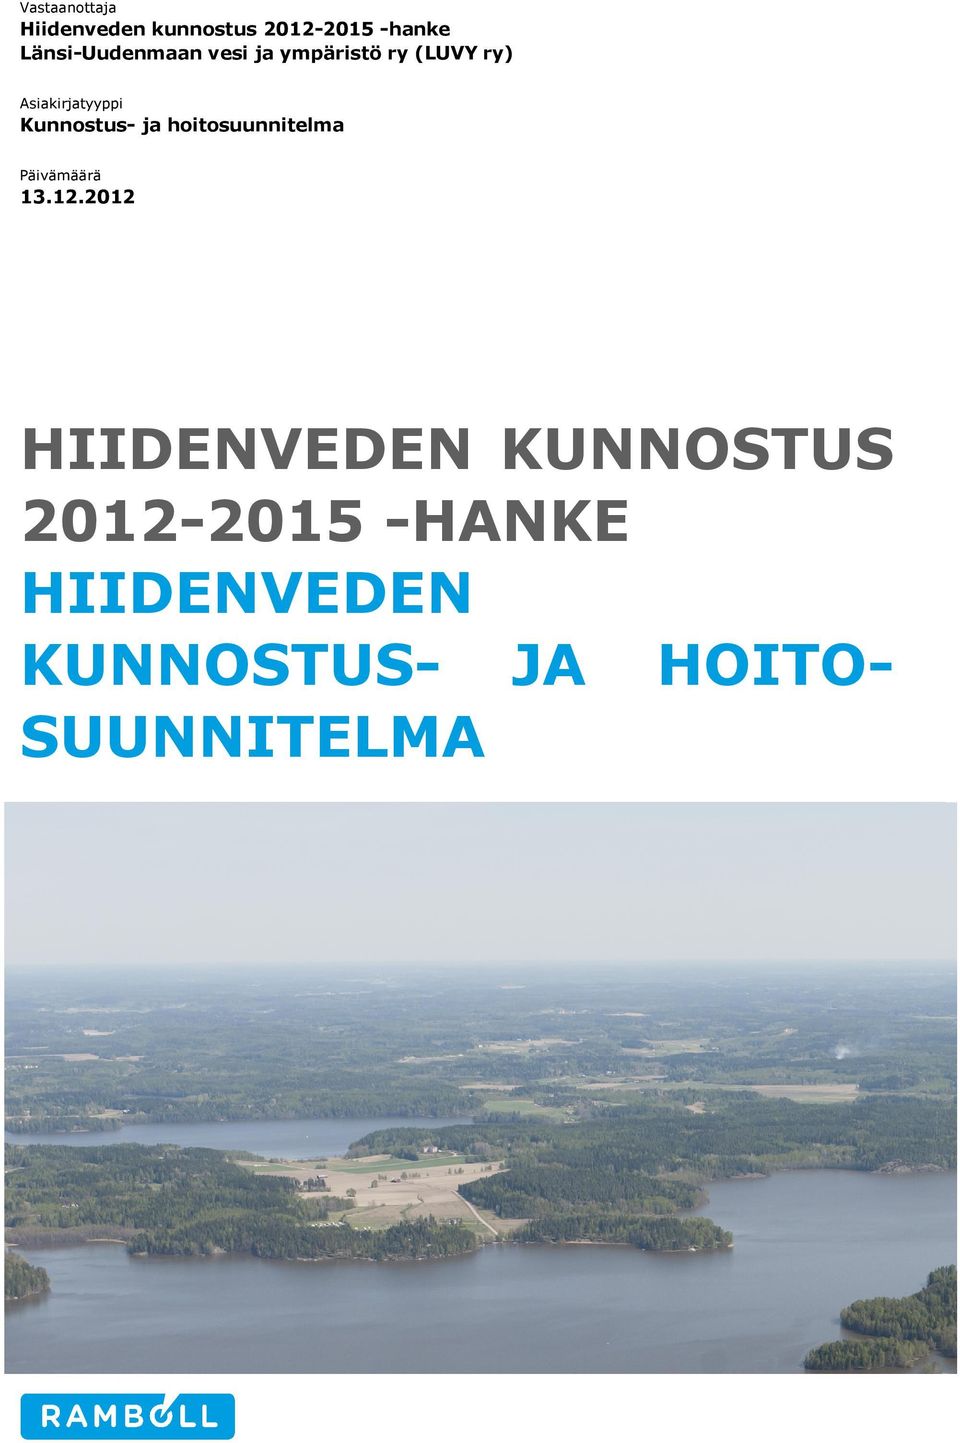 Kunnostus- ja hoitosuunnitelma Päivämäärä 13.12.